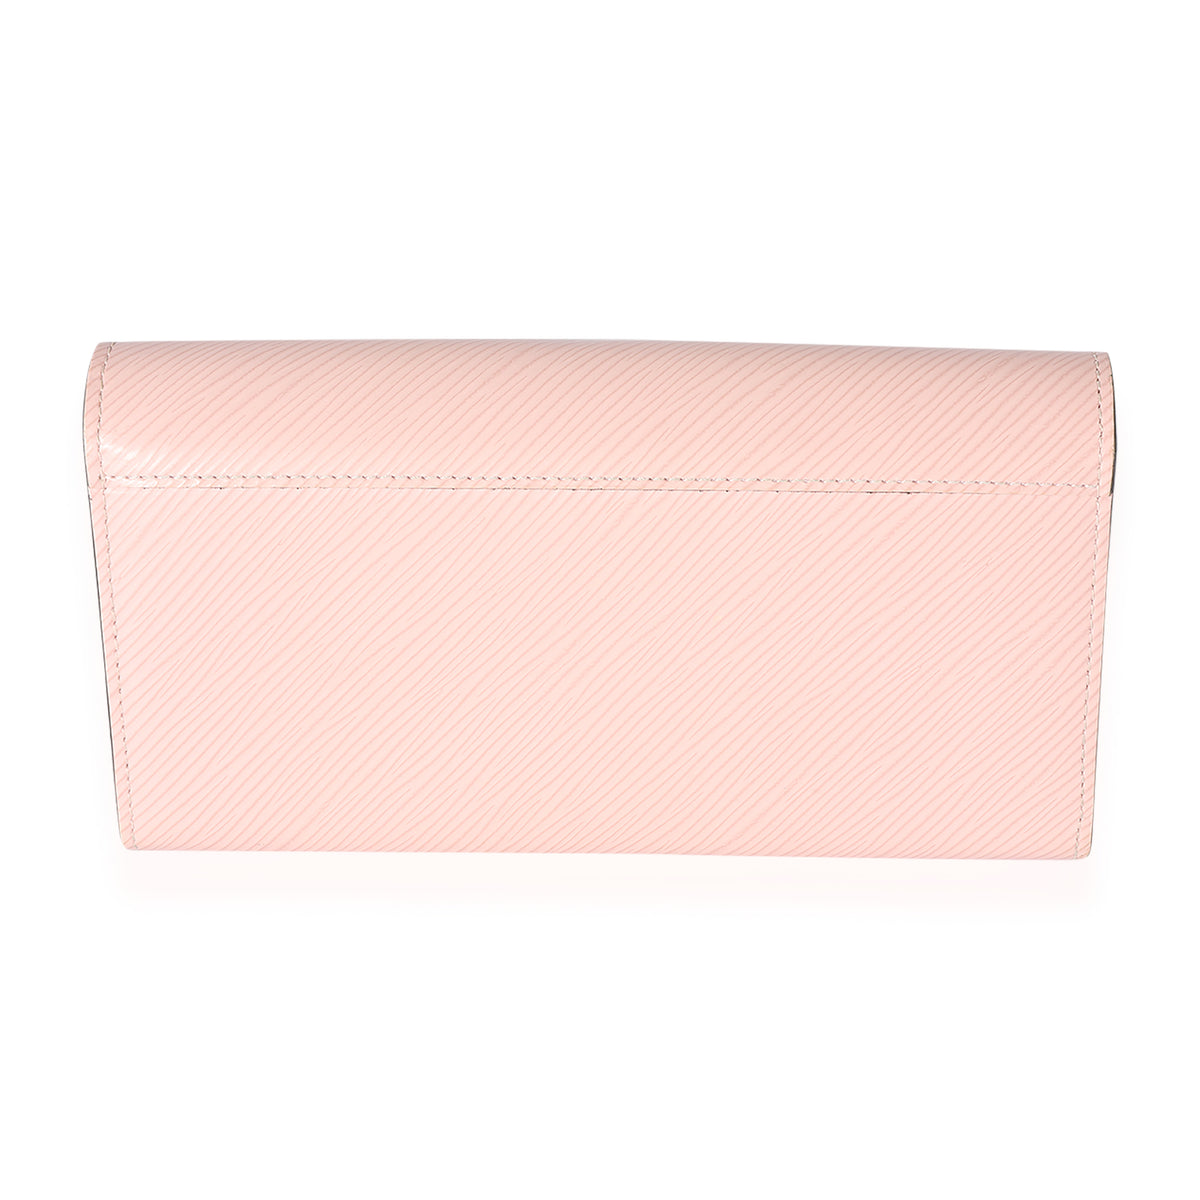 $6345 Louis Vuitton Twist Medium Epi Leather Rose color bag and Wallet set